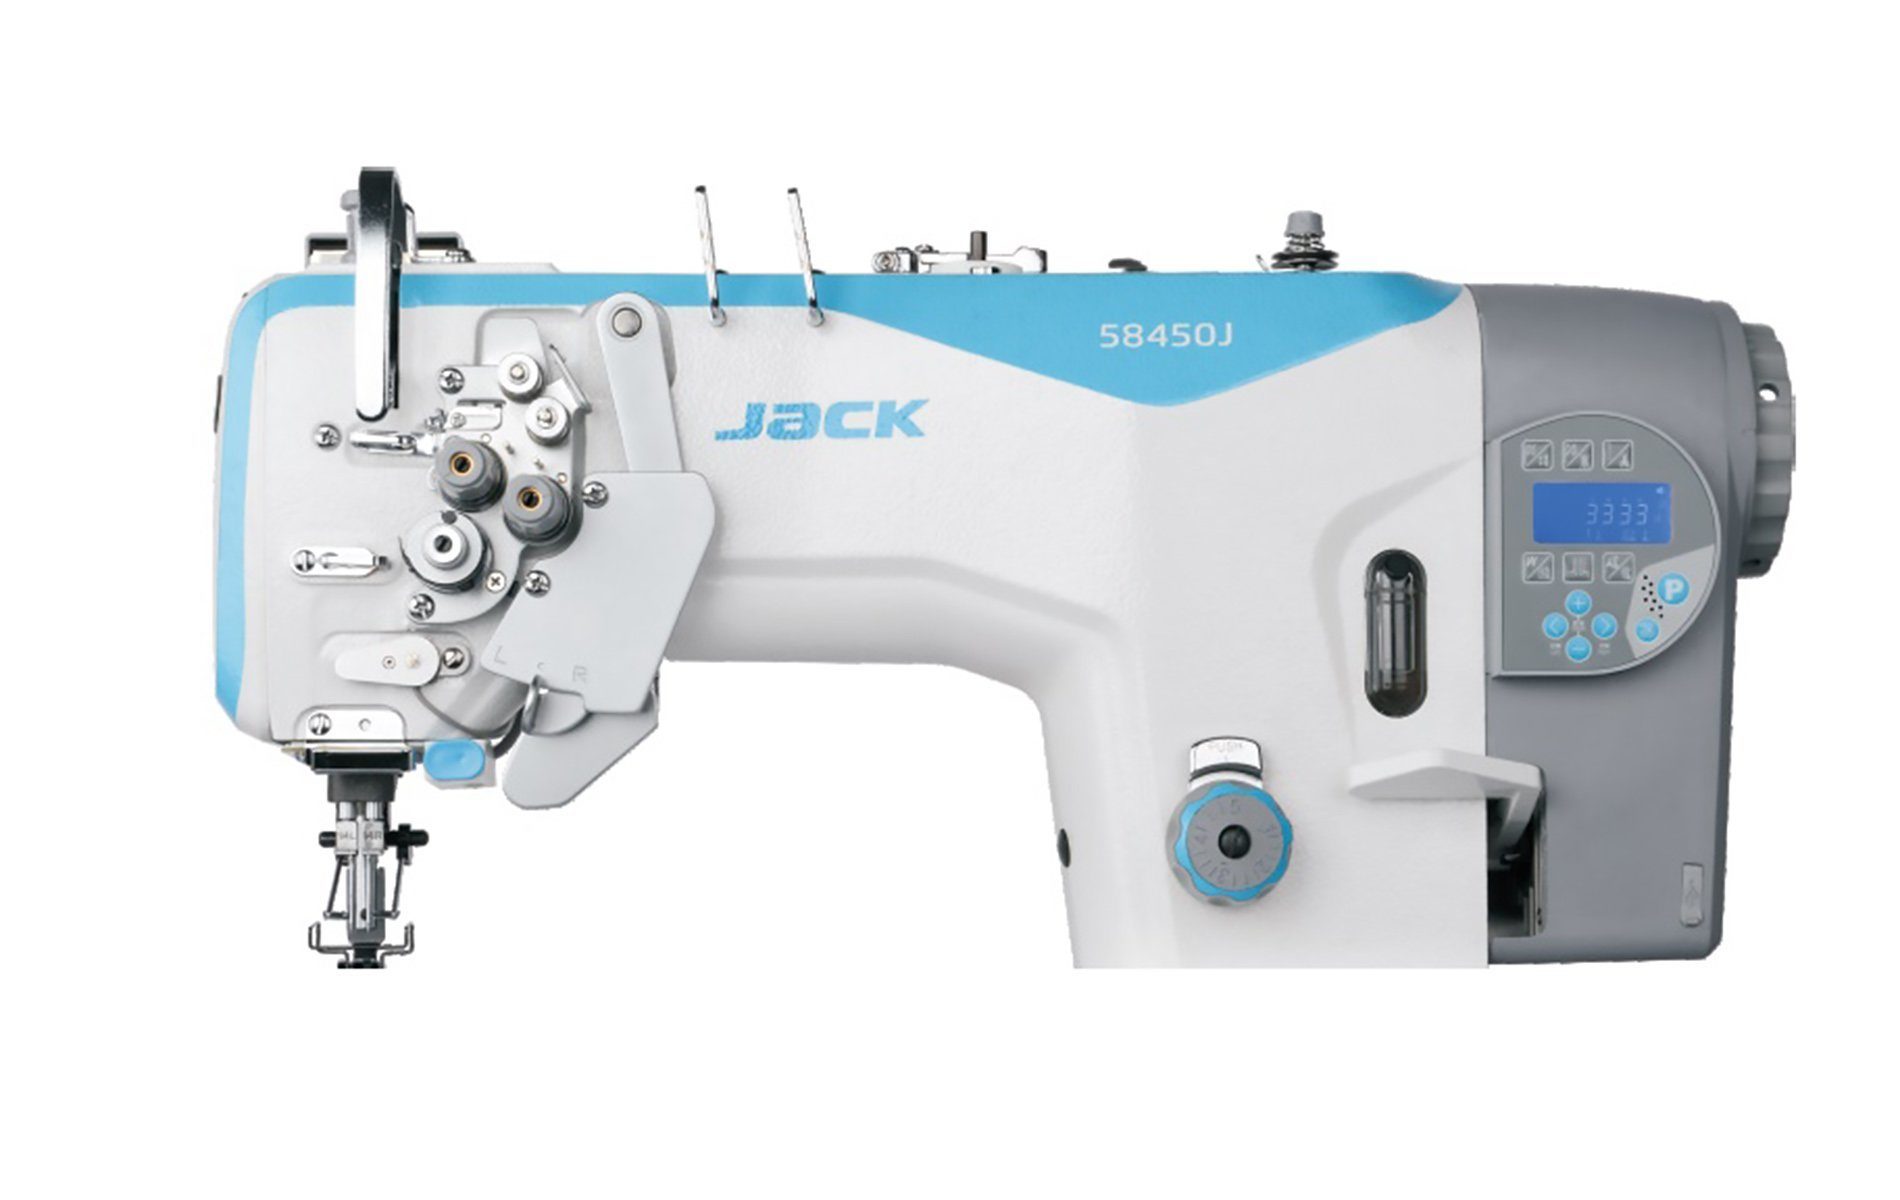 Швейная машина челночного стежка. Промышленная швейная машина Jack JK-58750j-405e. Швейная Промышленная двухигольная машина Jack JK-58750b. Jack 58420 швейная машина. Jack JK-58750j-405e.